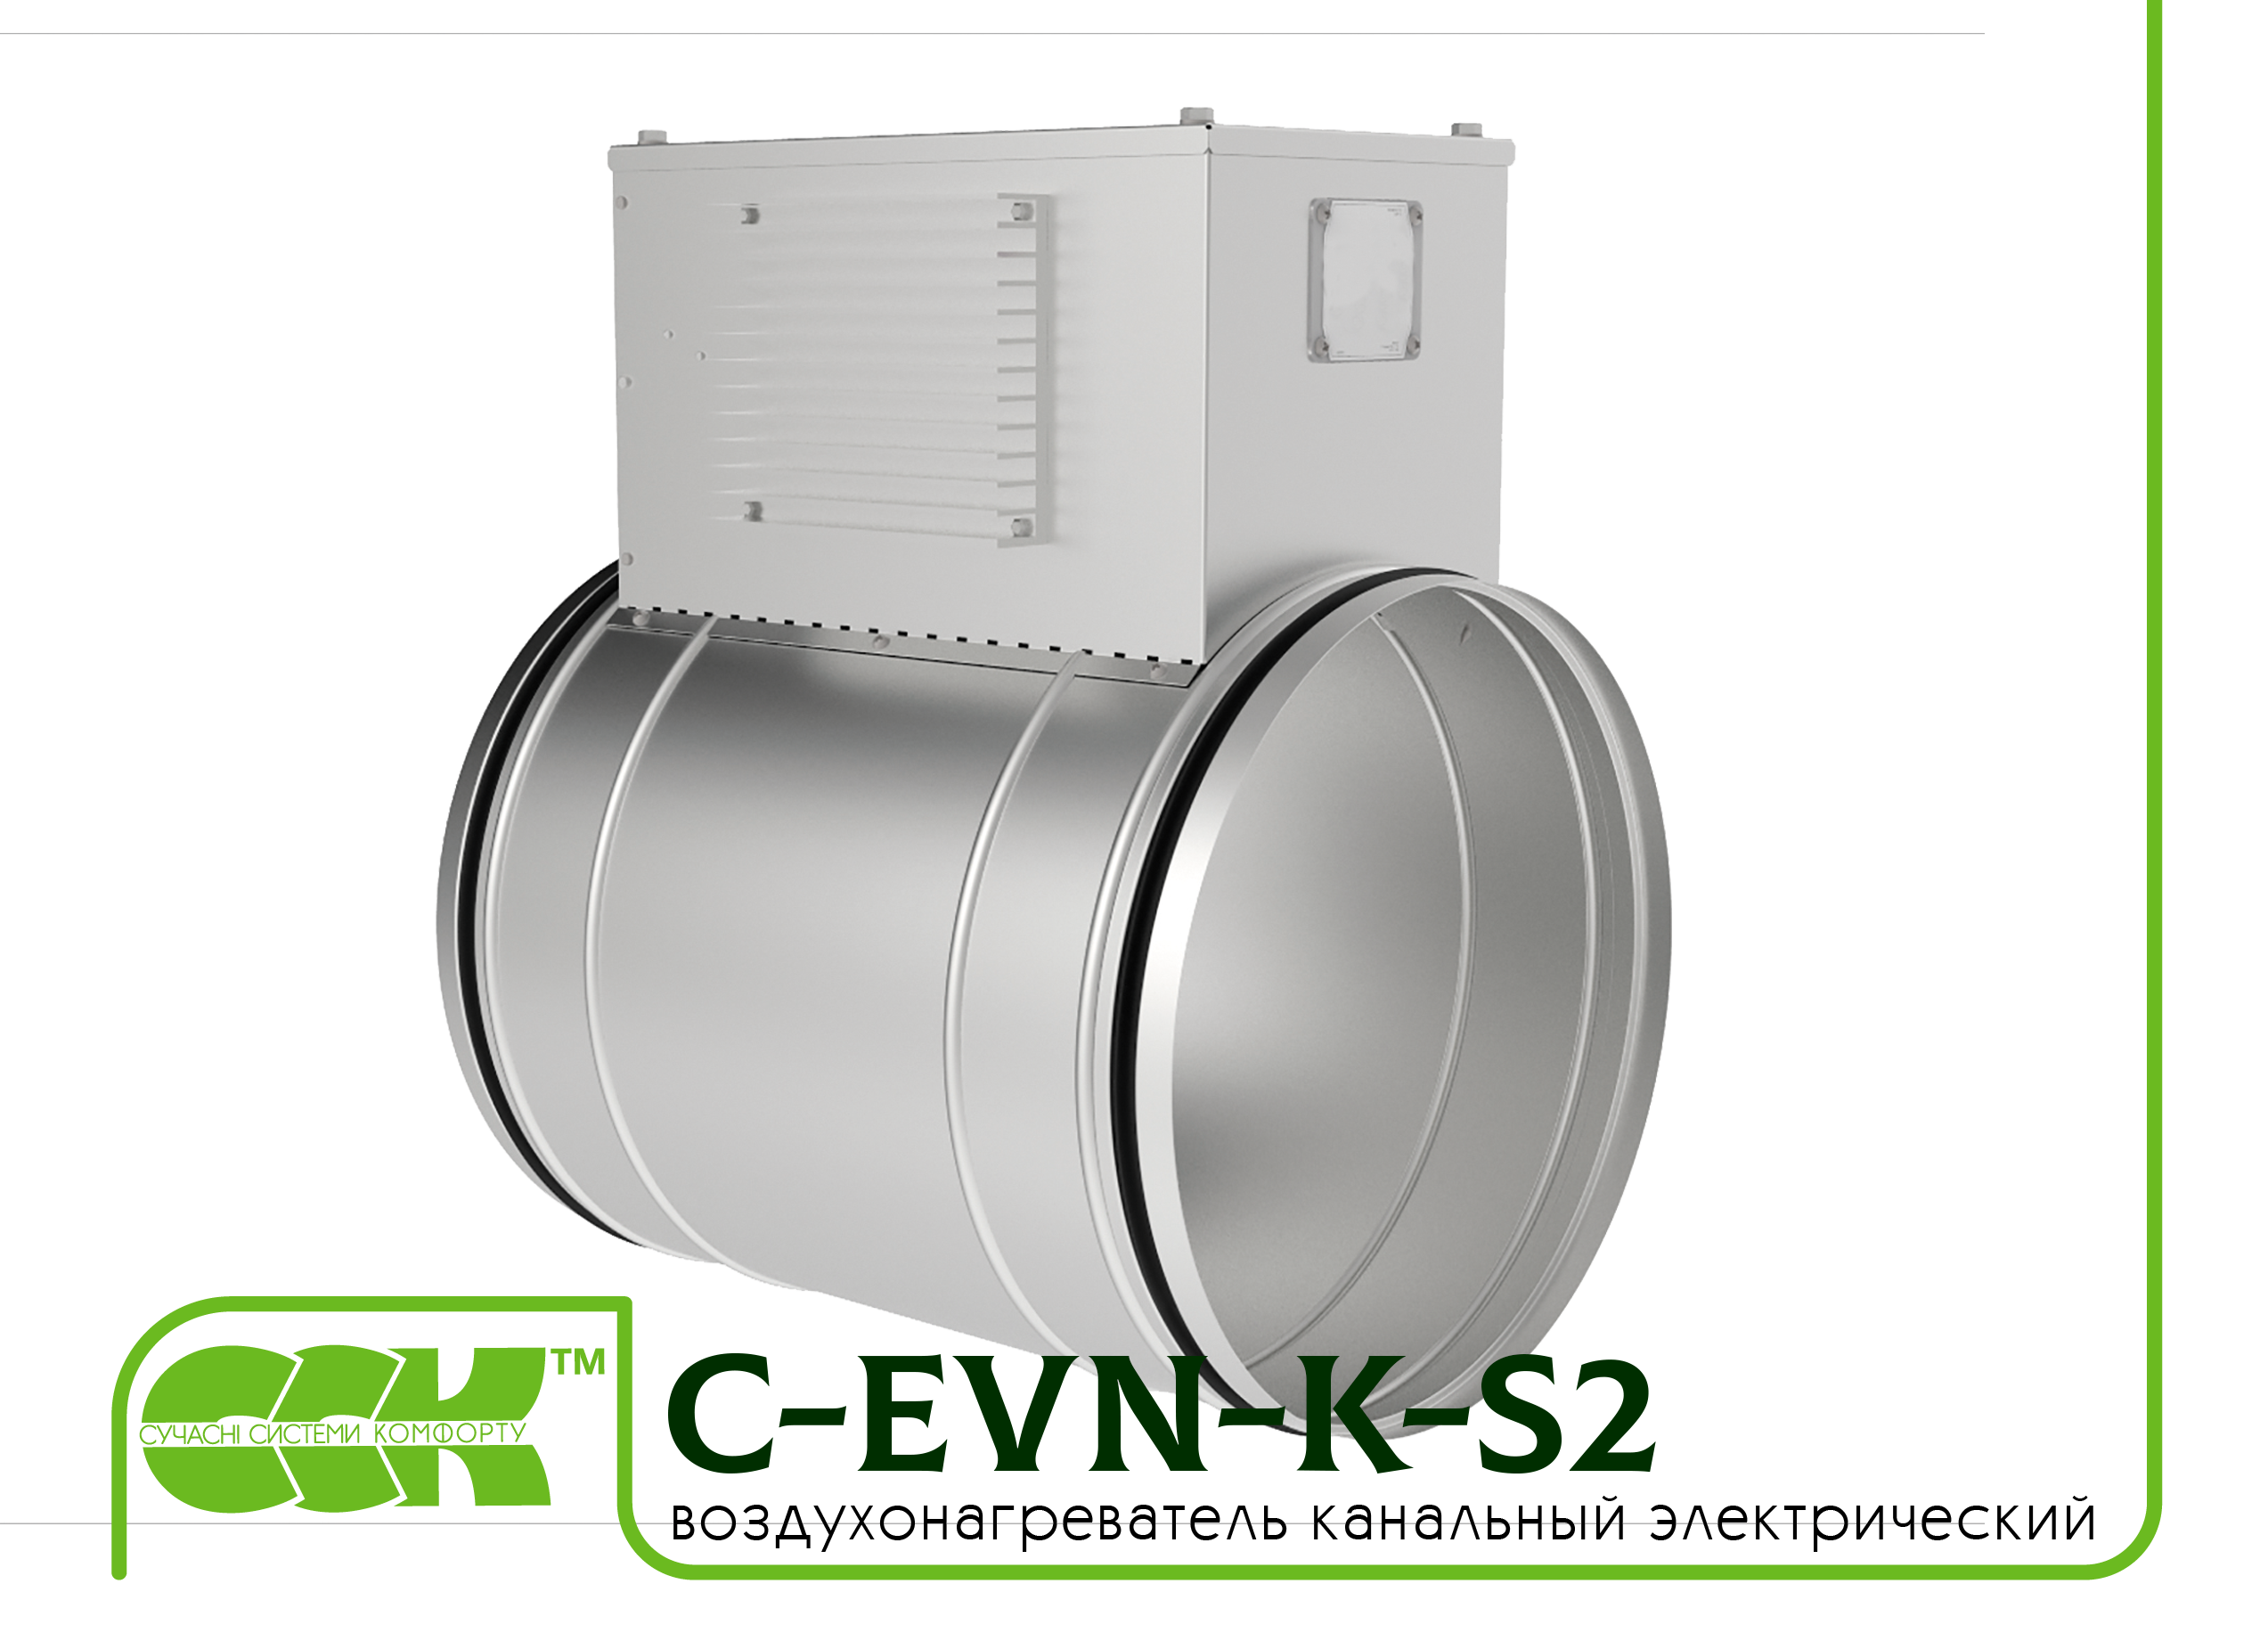 Воздухонагреватель канальный электрический для круглых каналов C-EVN-K-S2-315-9,0